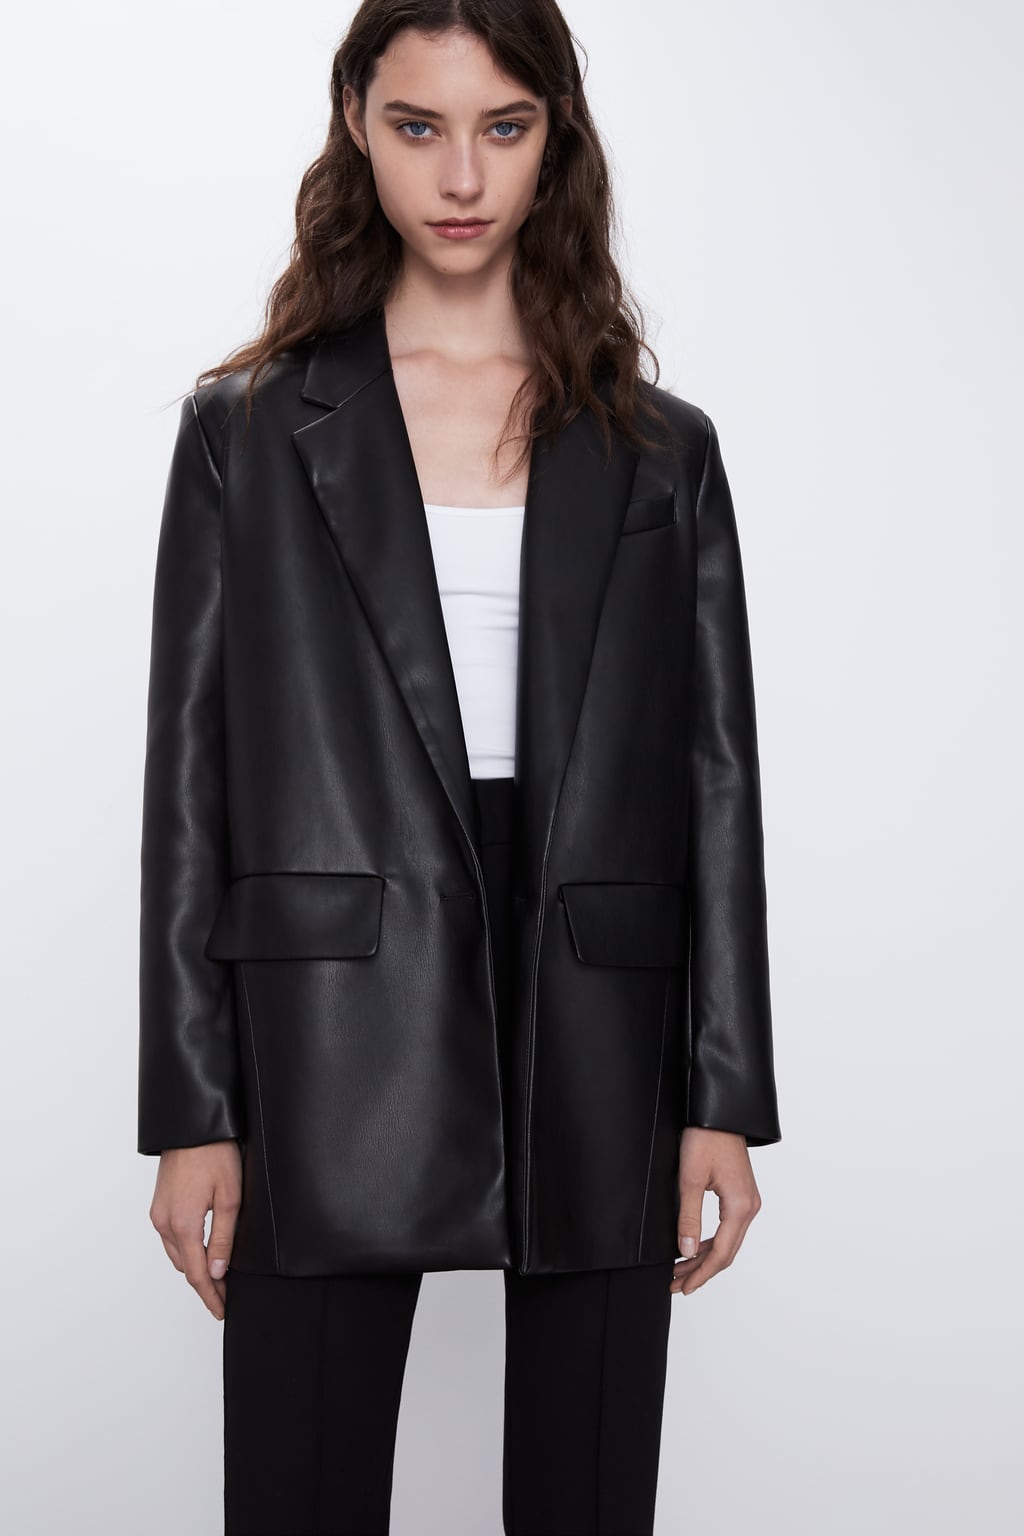 Women's Blazers, Black, Leather & Oversized Blazers